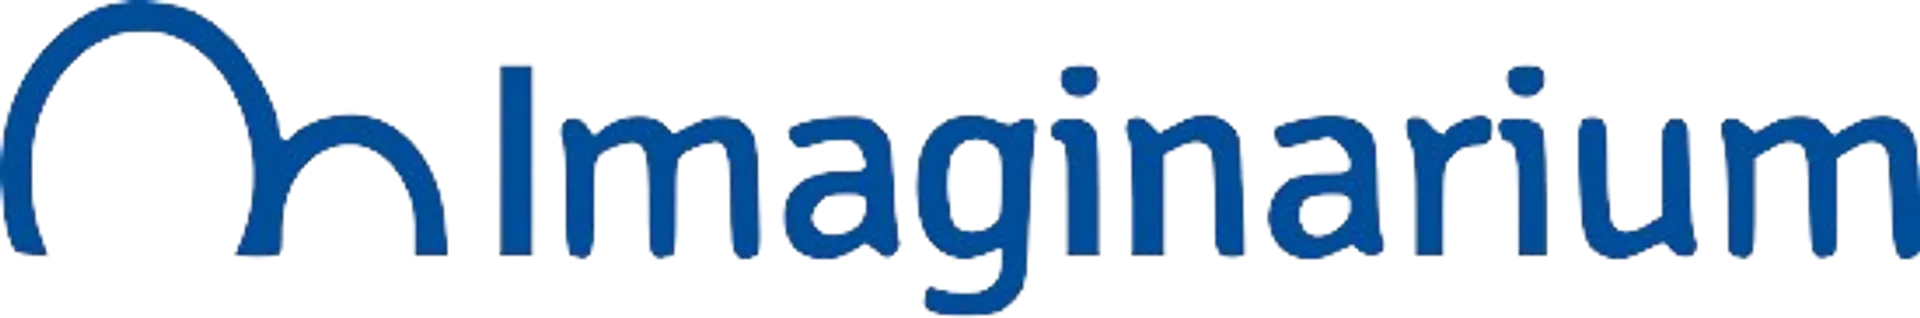 IMAGINARIUM logo de folhetos